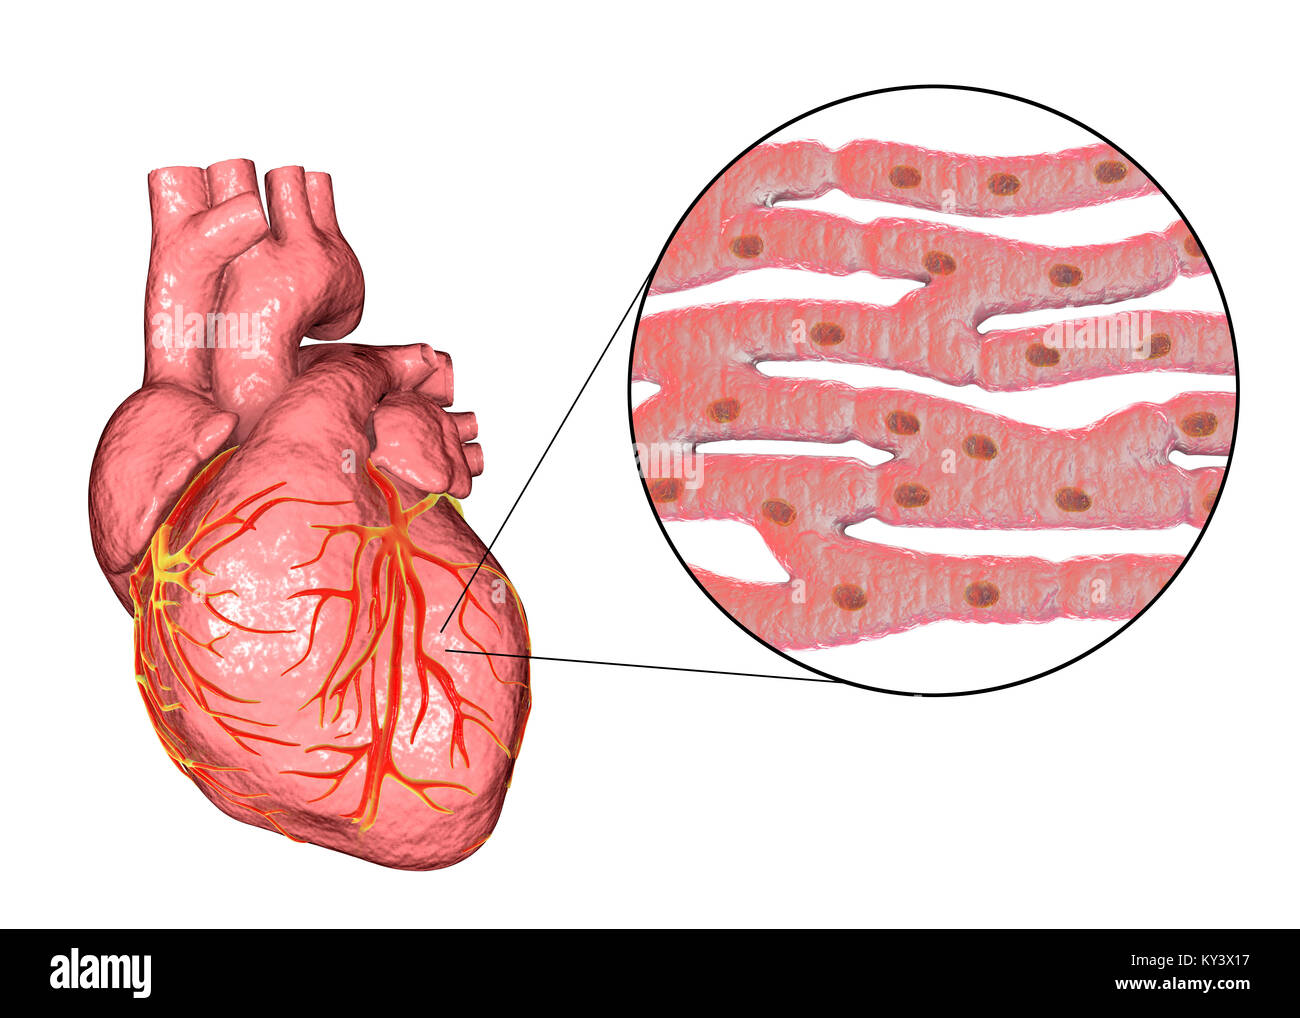 Heart,ordinateur illustration.Le coeur est un sac creux (cadre inférieur) des tissus musculaires qui pompe le sang autour du corps.Les petits vaisseaux sanguins coronaire surface fournir le muscle cardiaque en sang.Quatre grands vaisseaux sanguins (cadre supérieur) ramènent le sang de et du coeur.Depuis le coin supérieur gauche vers le centre droit ils sont : la veine cave (le retour veineux du sang désoxygéné du corps) ; l'aorte (artère par laquelle le sang oxygéné est pompée à l'organisme) ; l'artère pulmonaire (par lequel le sang désoxygéné est pompé dans les poumons) Banque D'Images